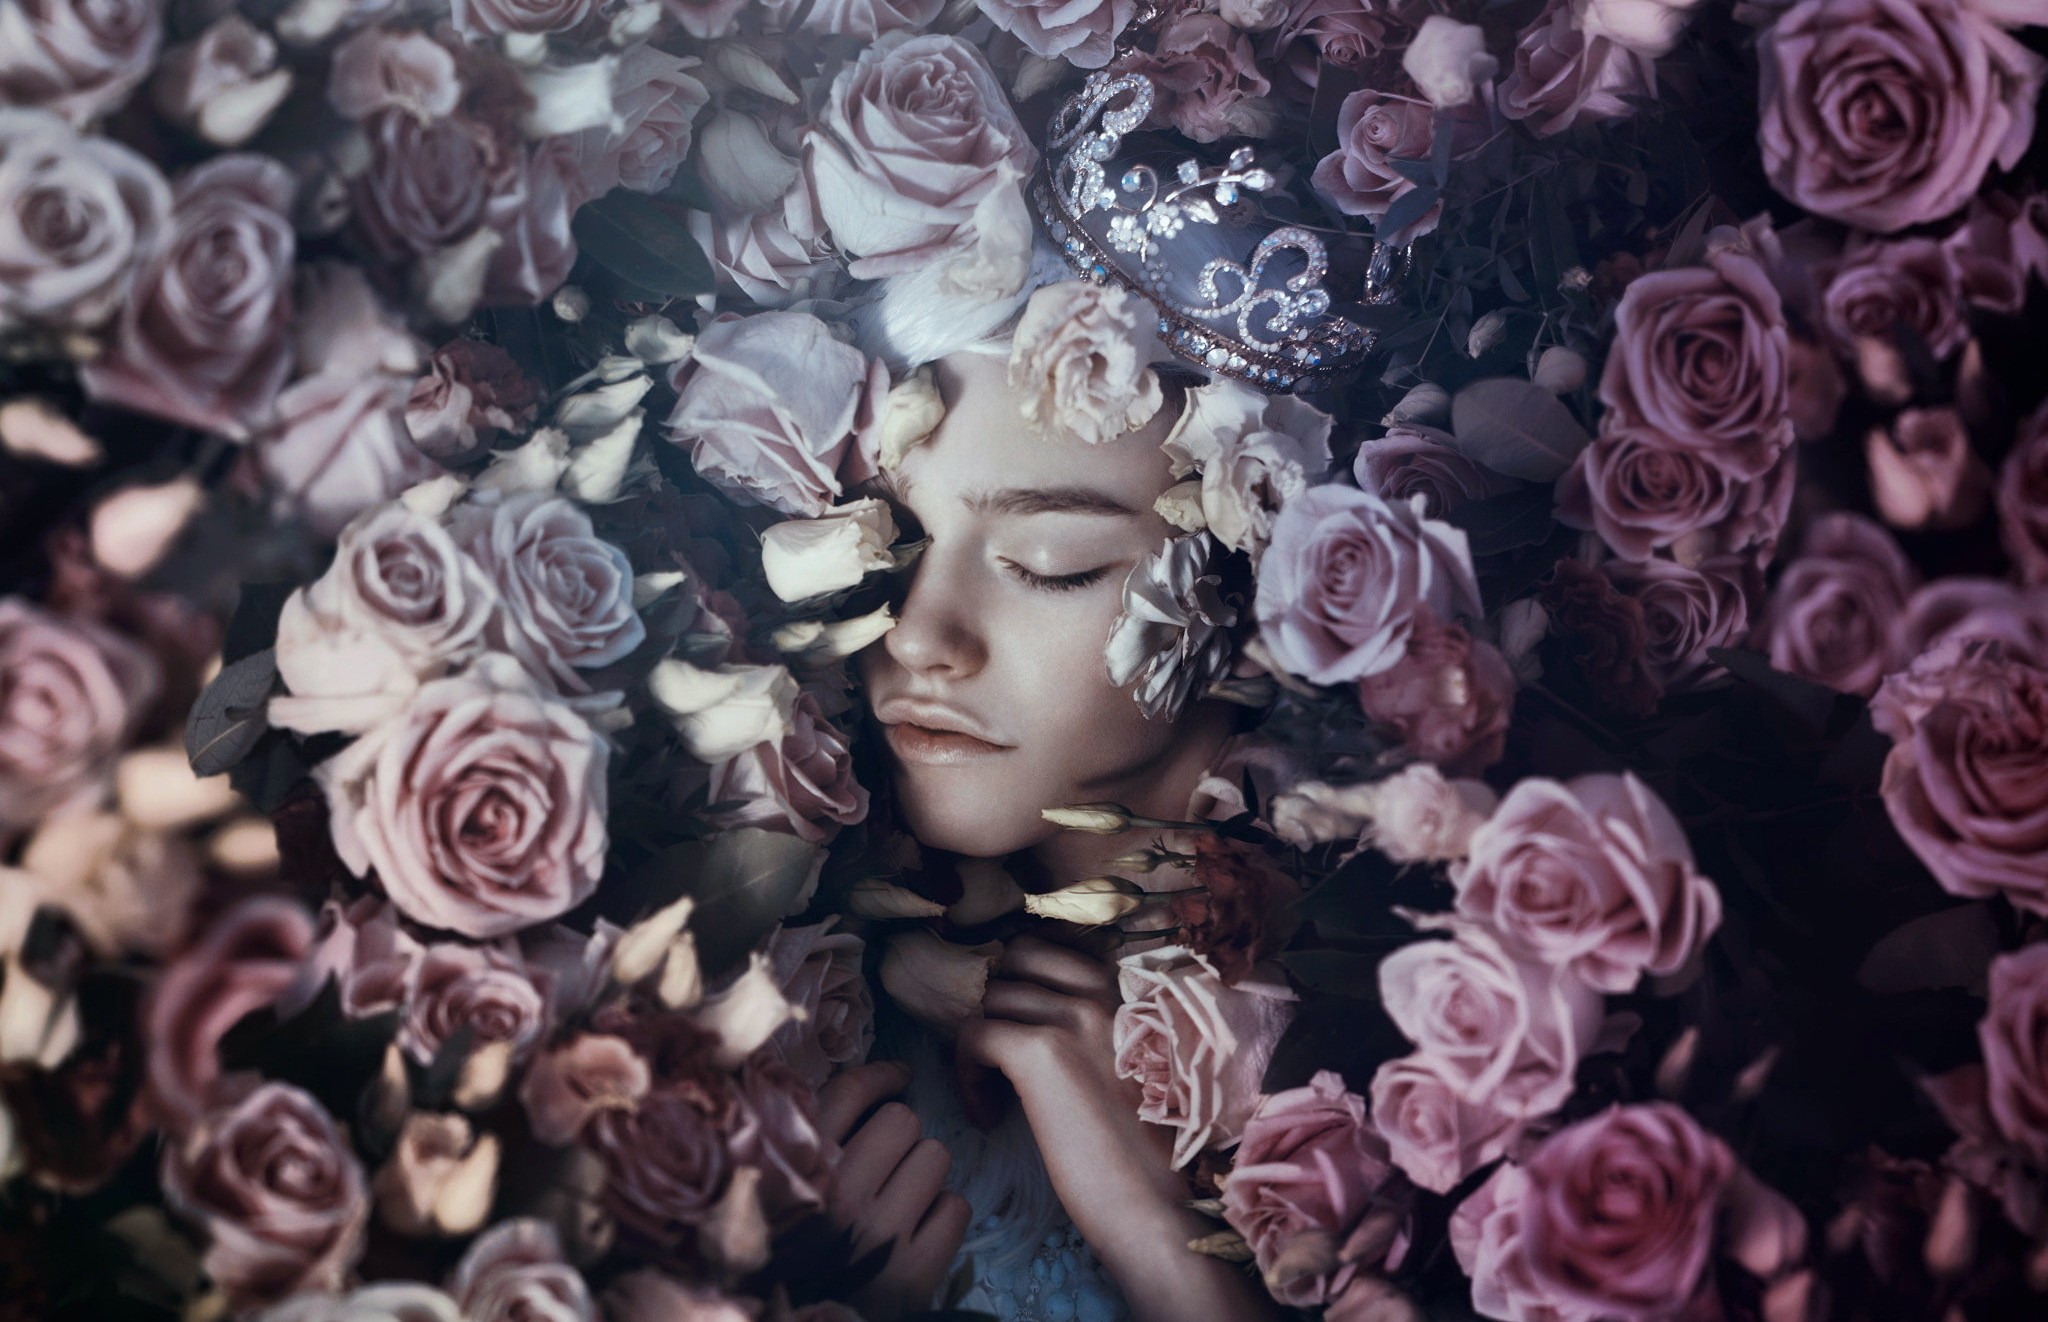 People 2048x1322 face closed eyes fantasy girl women model portrait rose flowers plants